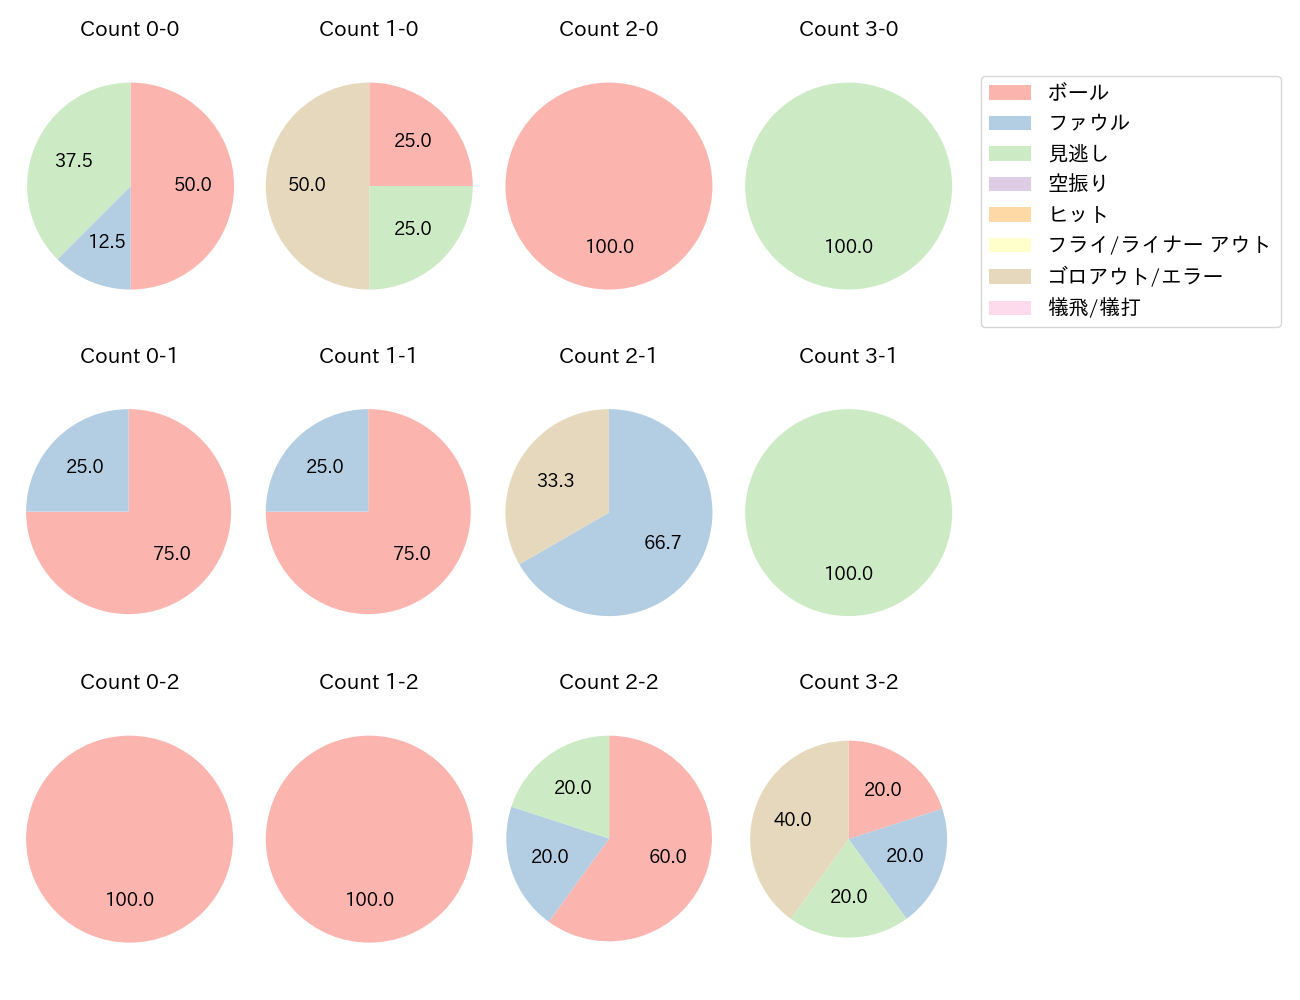 田中 和基の球数分布(2021年3月)